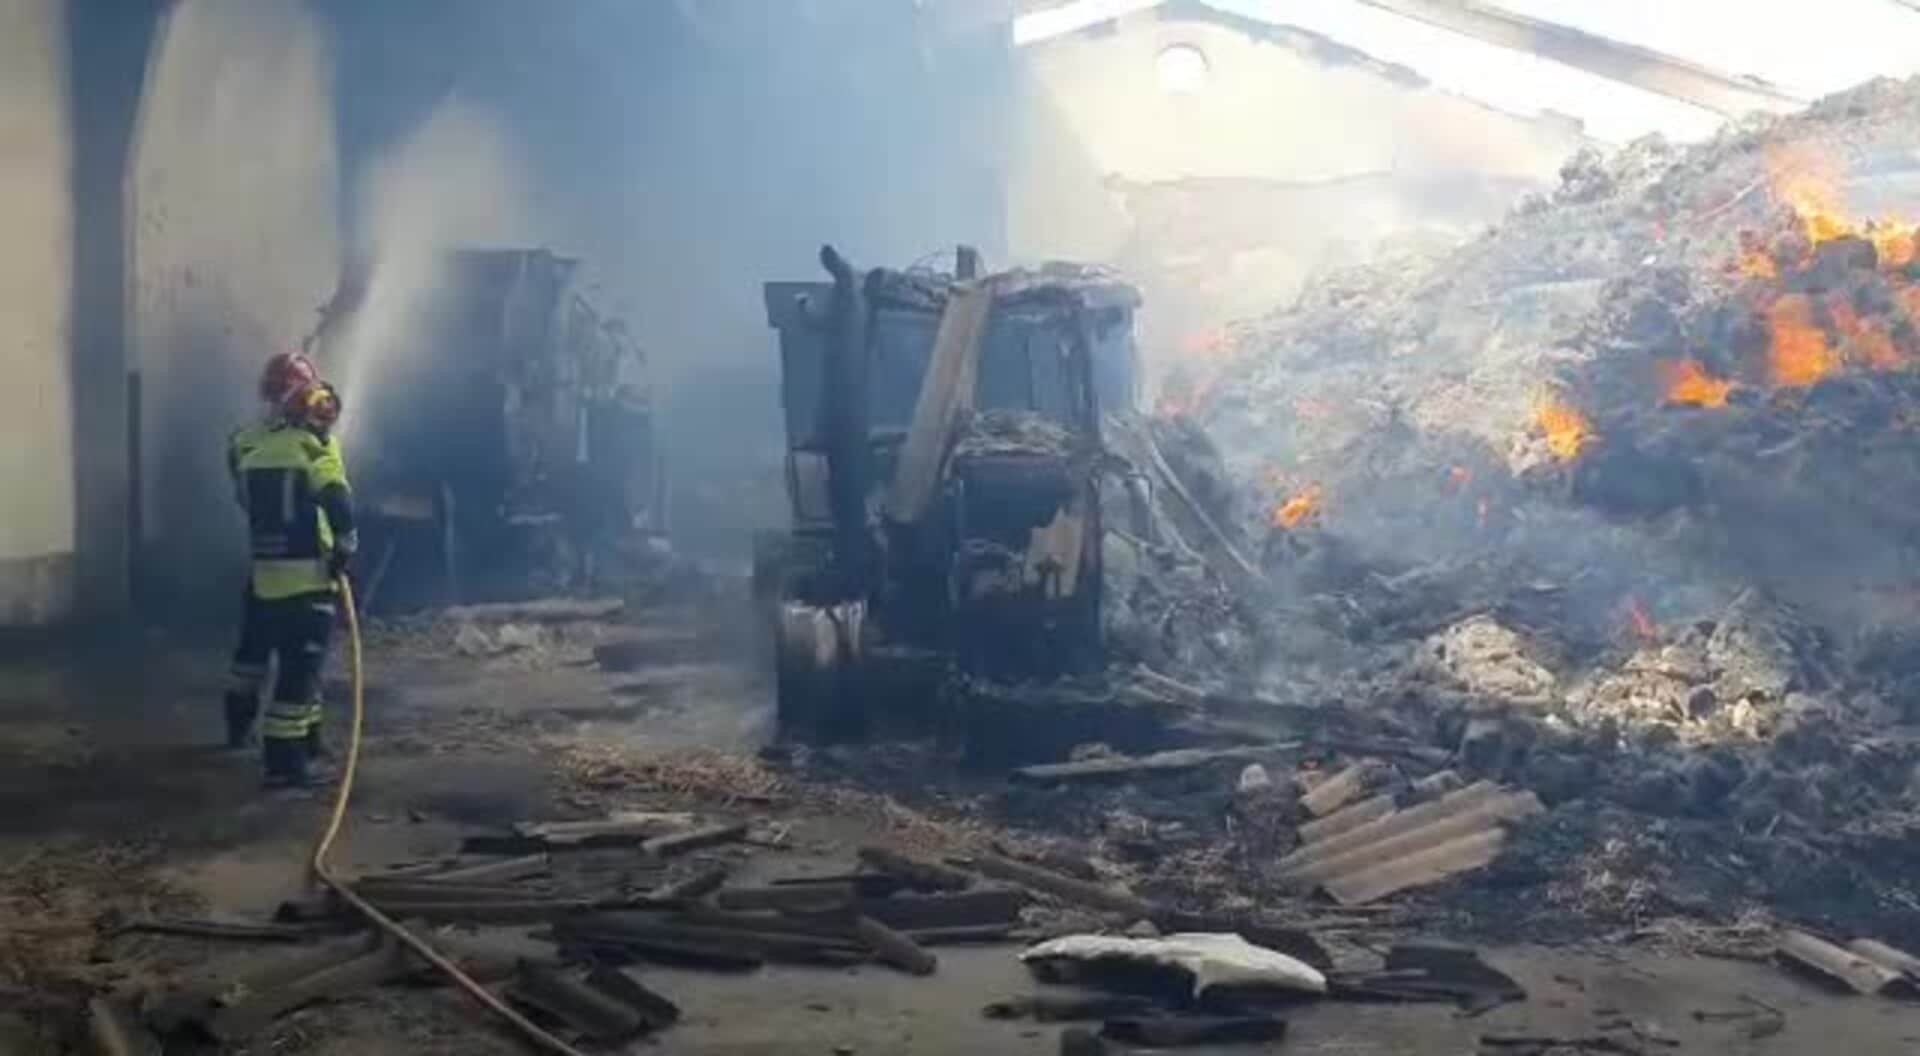 El fuego destruye una nave agrícola en un pueblo de Palencia